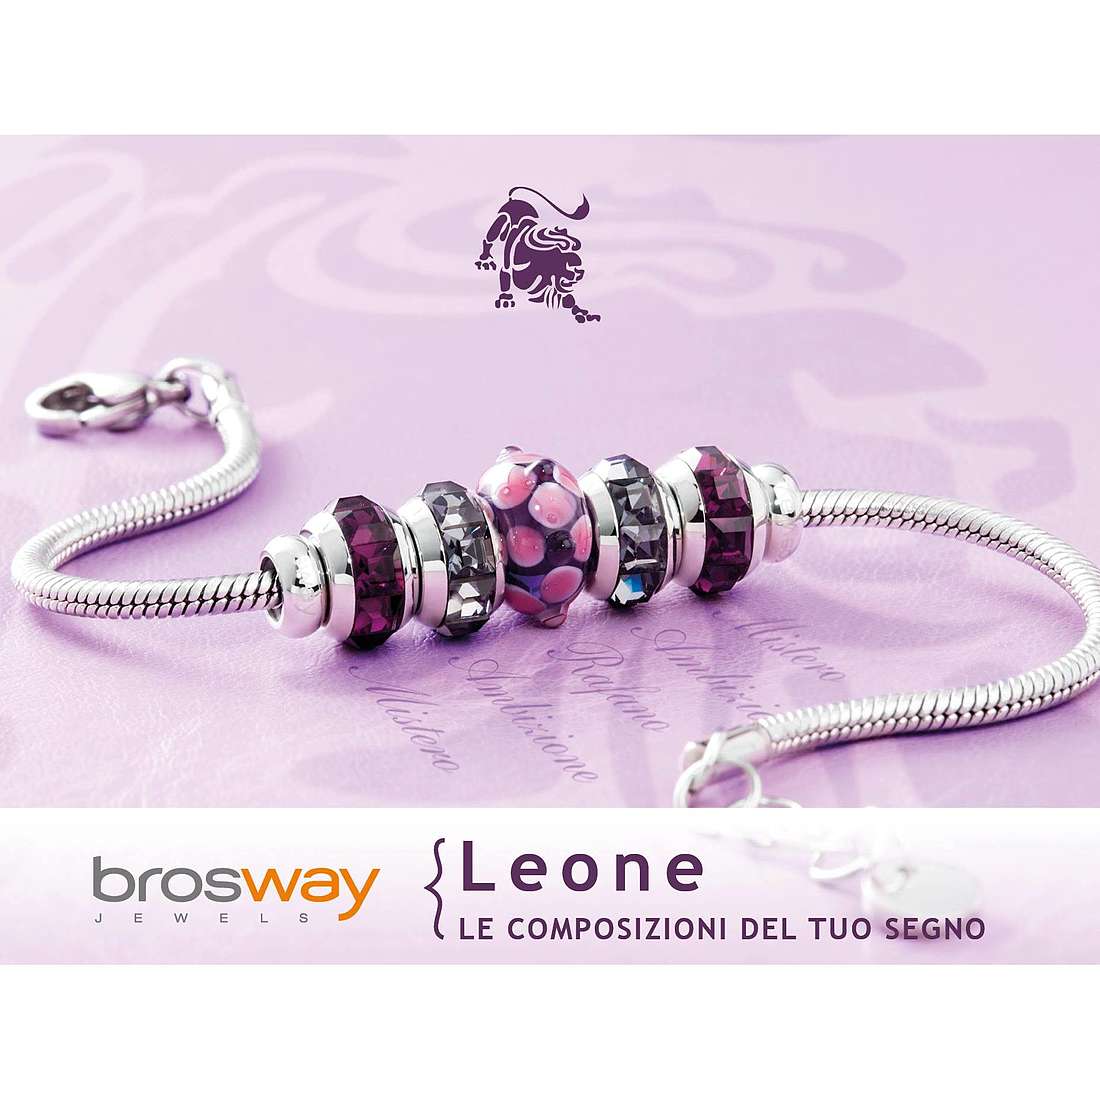 bracelet woman zodiac sign Leo Brosway jewel Tres Jolie Mini BTJMZ05